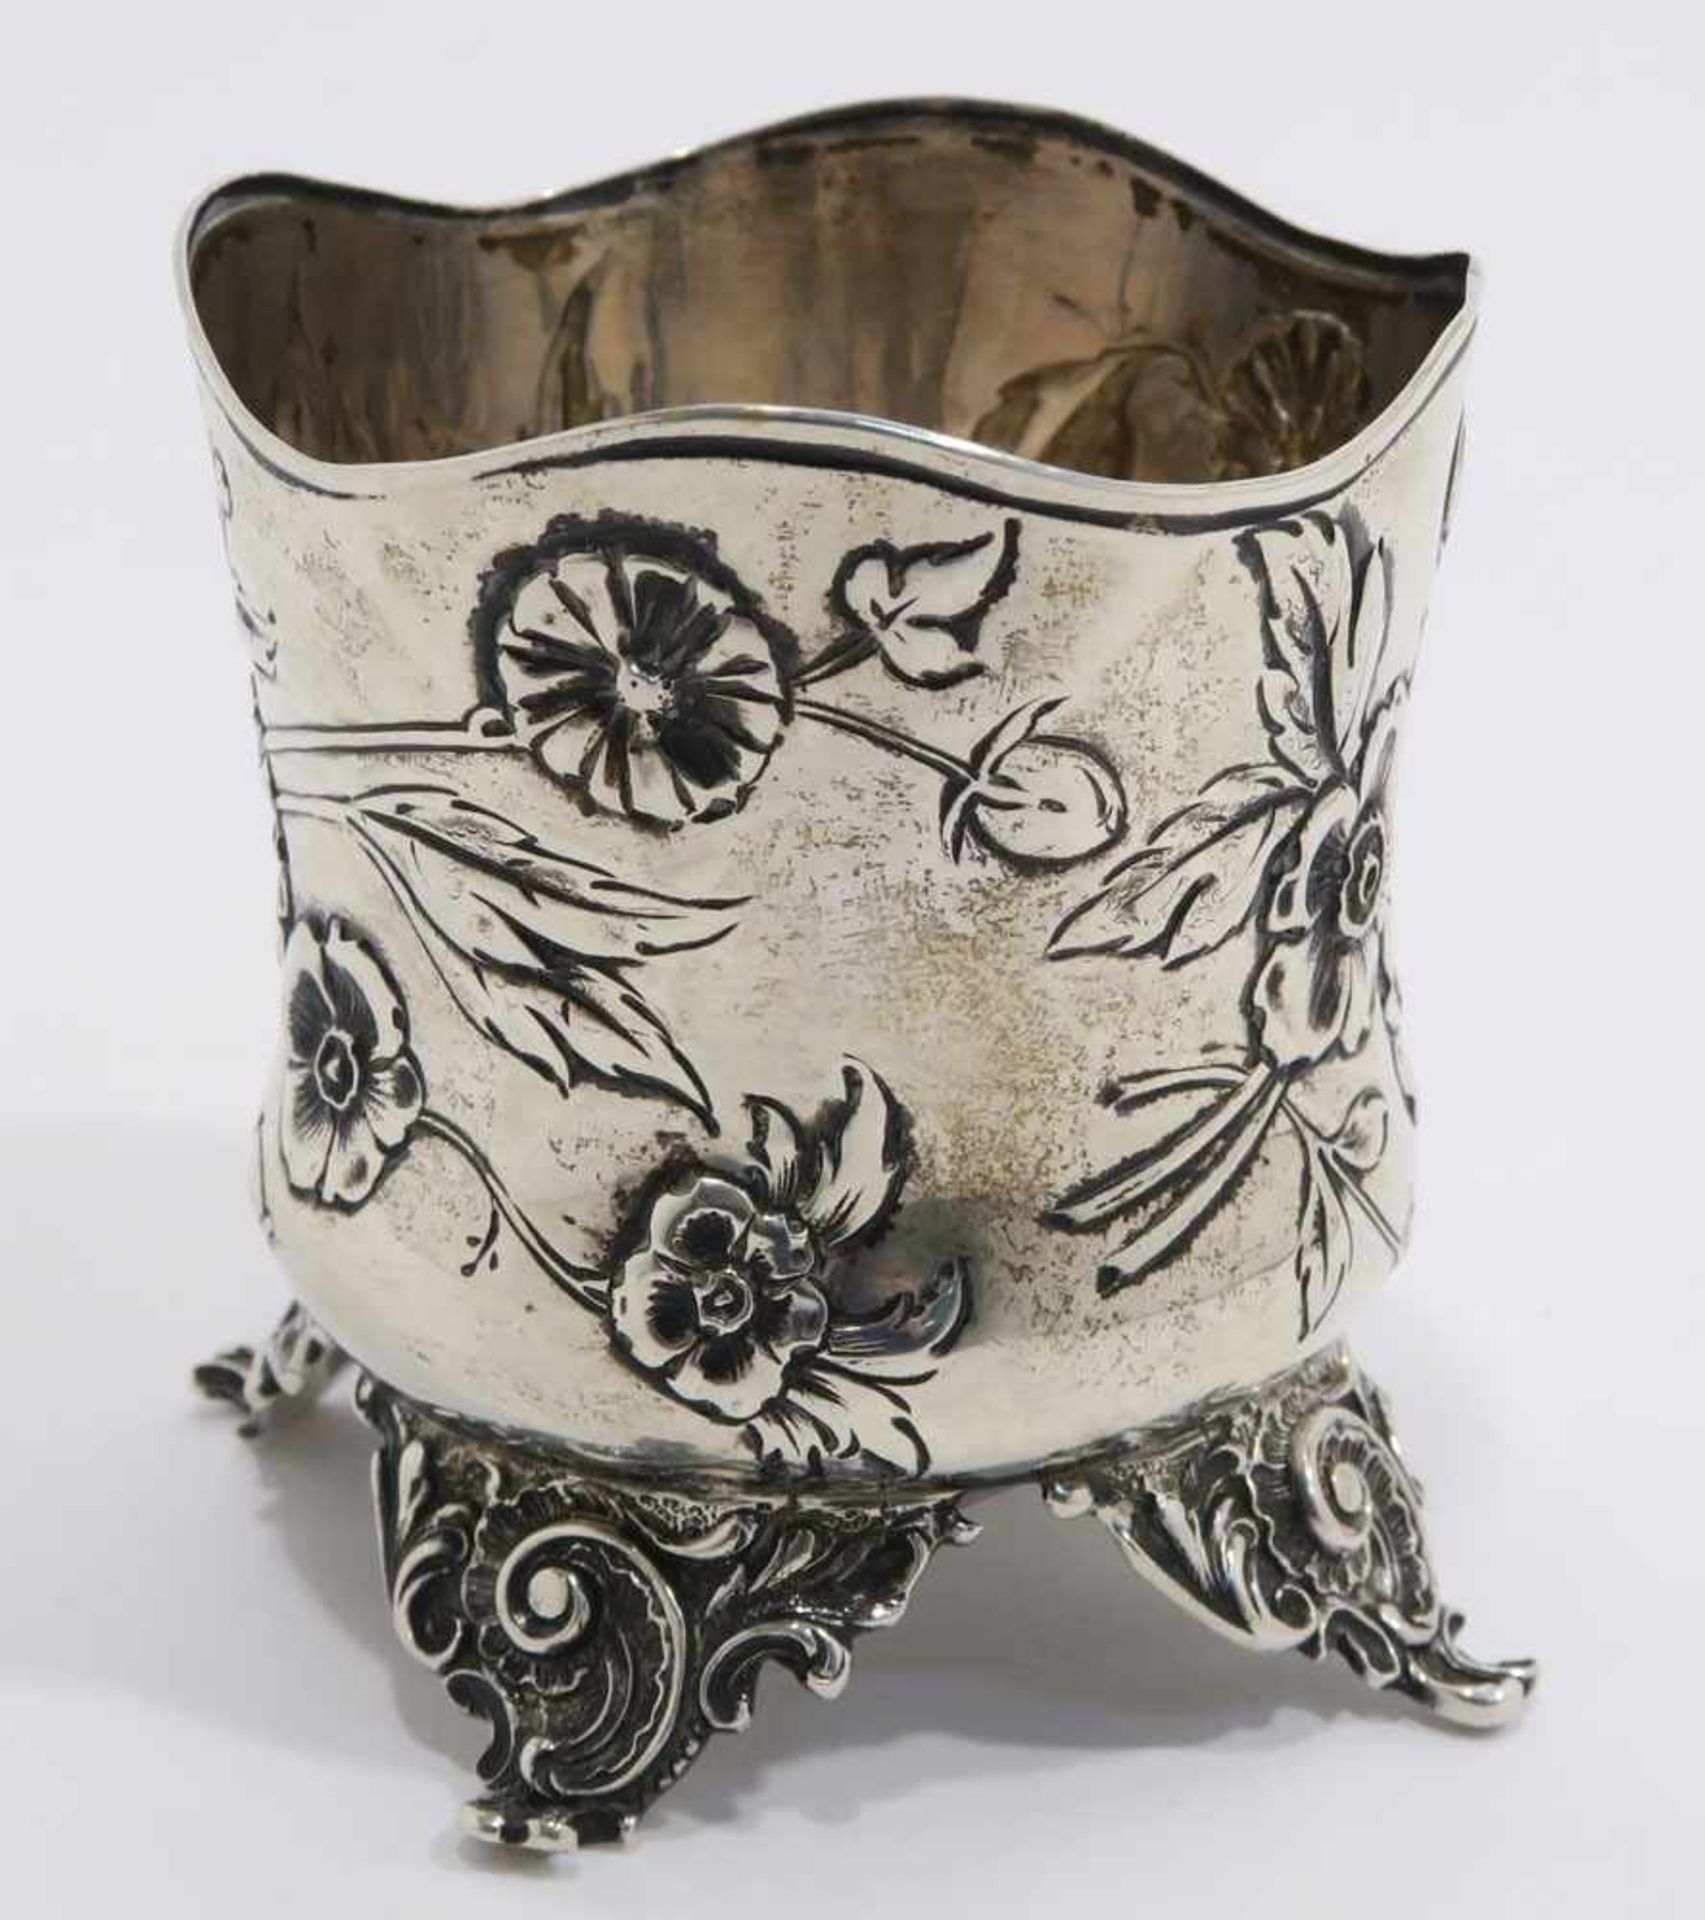 TeeglashalterWien, 1872 - 1912, Franz Rumwolf sen. Silber. Becher mit gewelltem Rand und